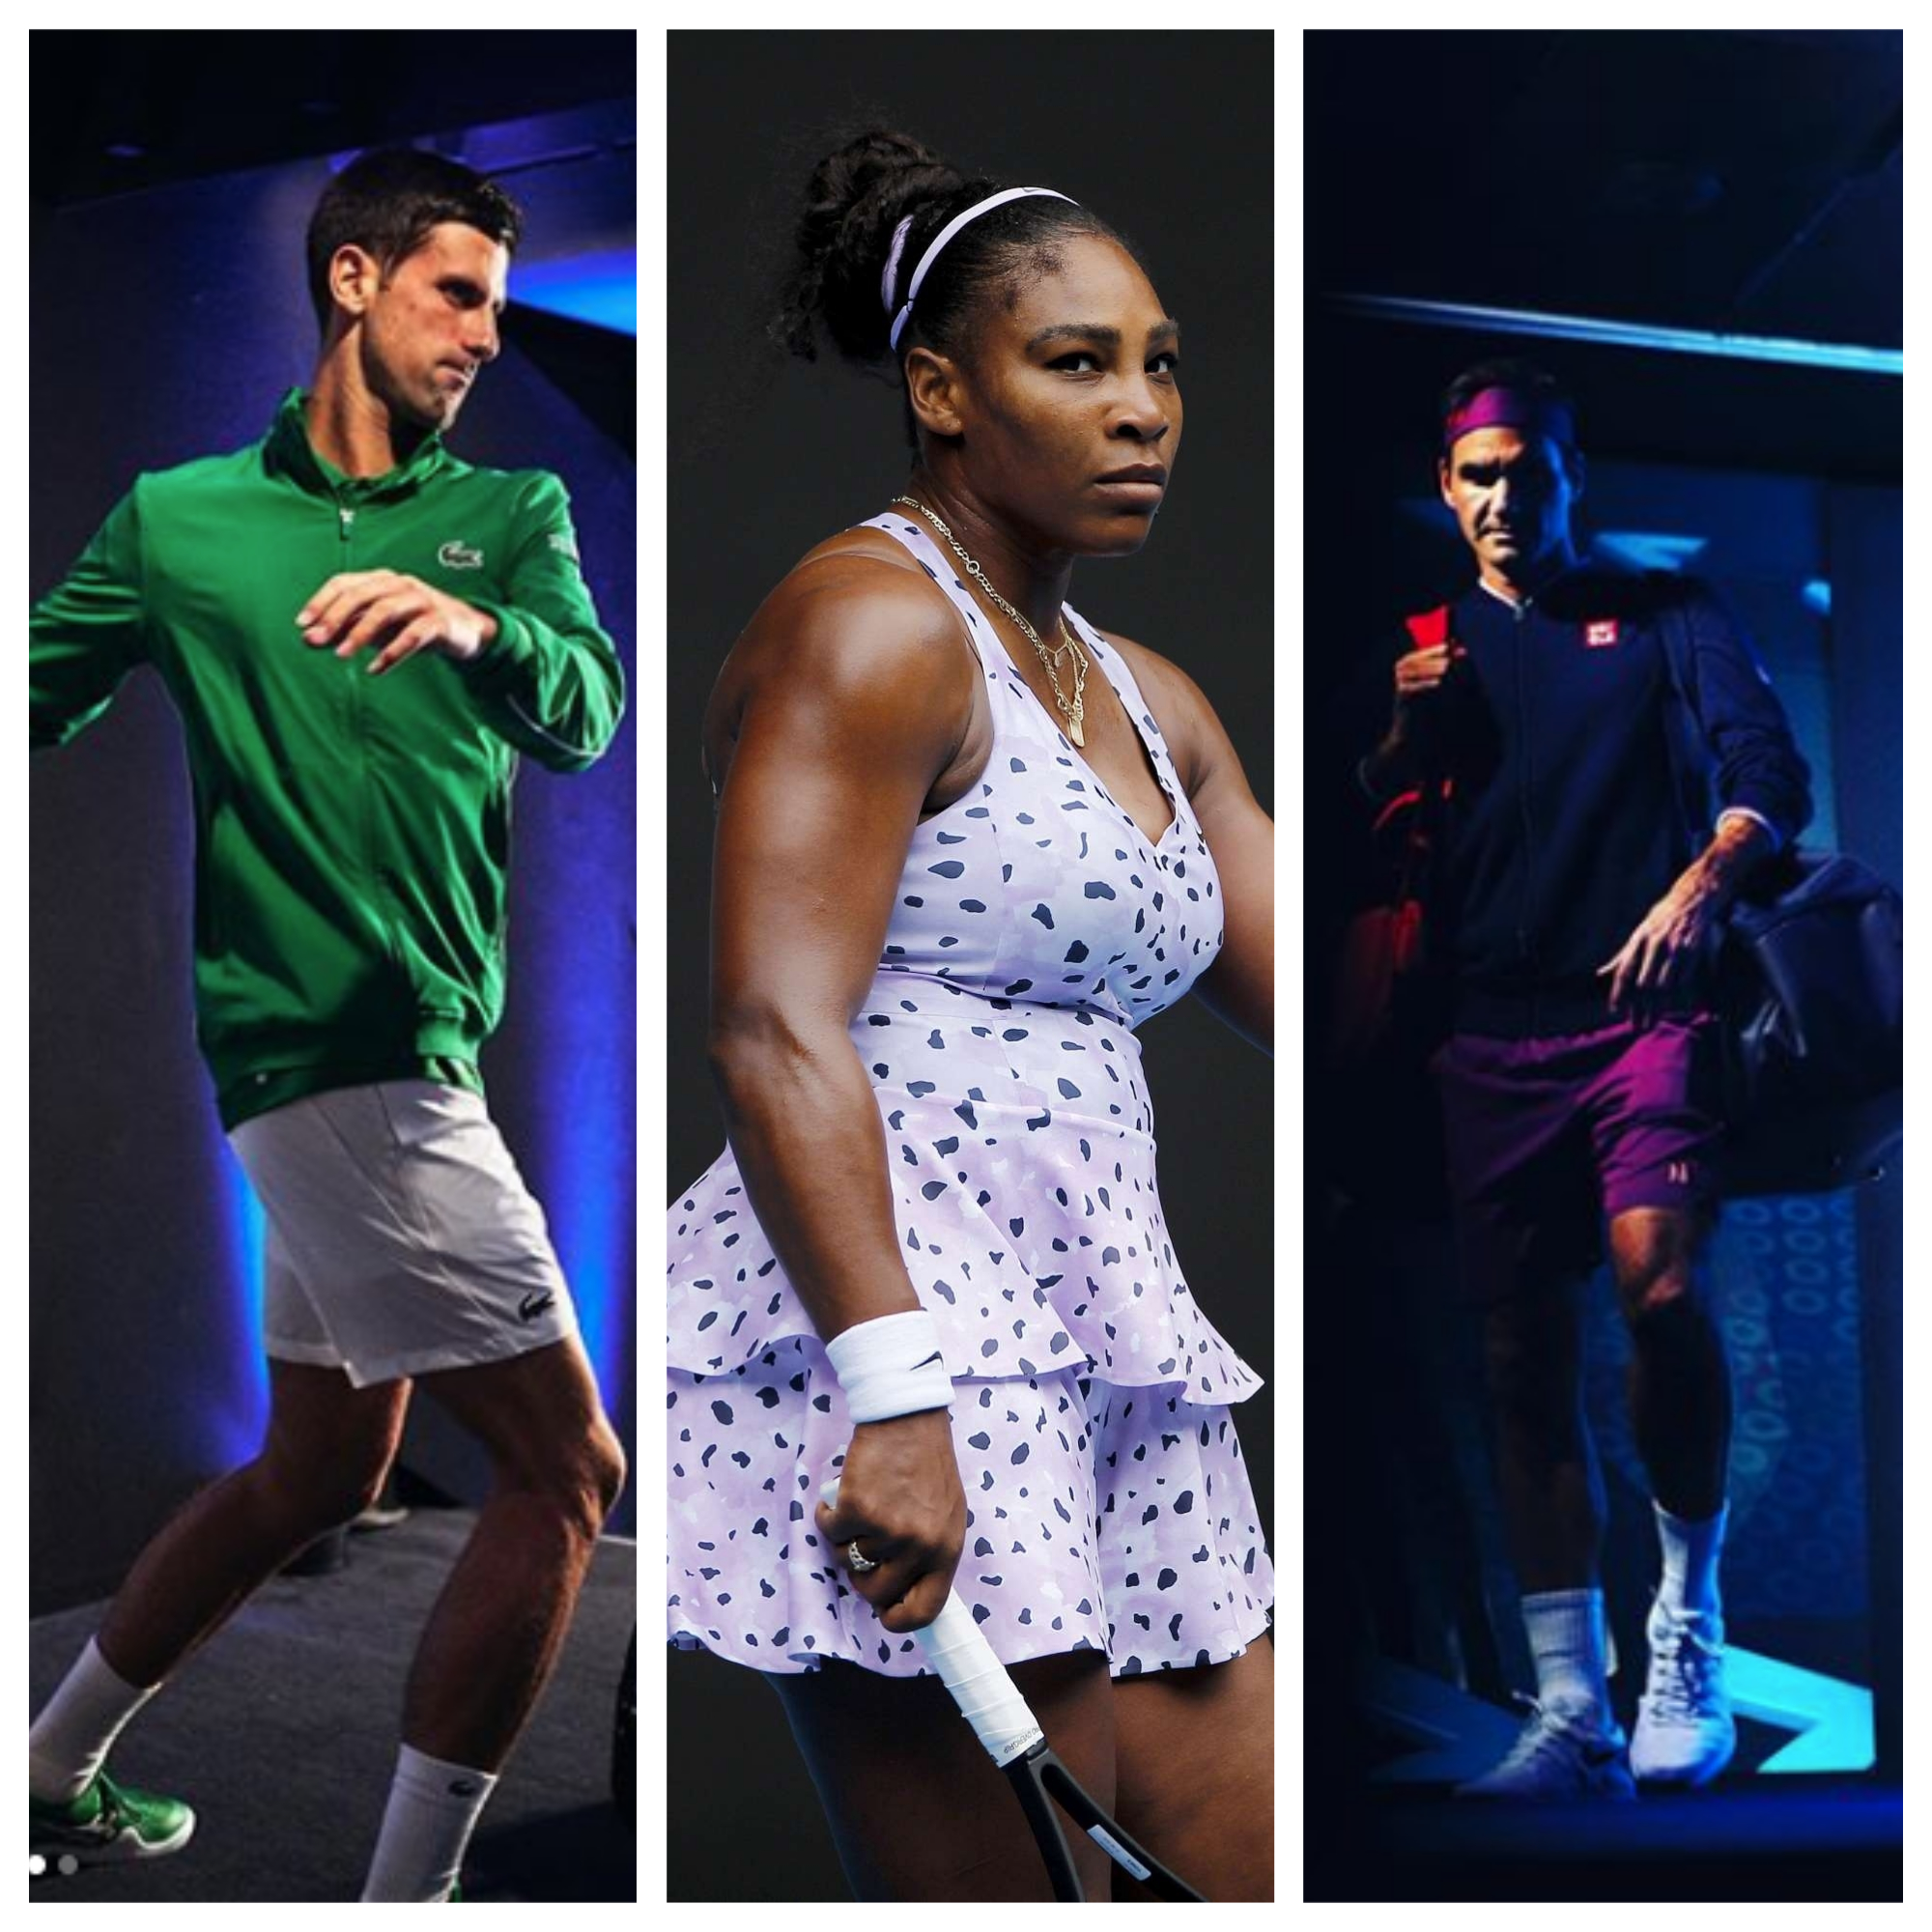 Ontevreden Eeuwigdurend halen The Best Dressed Men and Women At The 2020 Australian Open! - TENNIS  EXPRESS BLOG